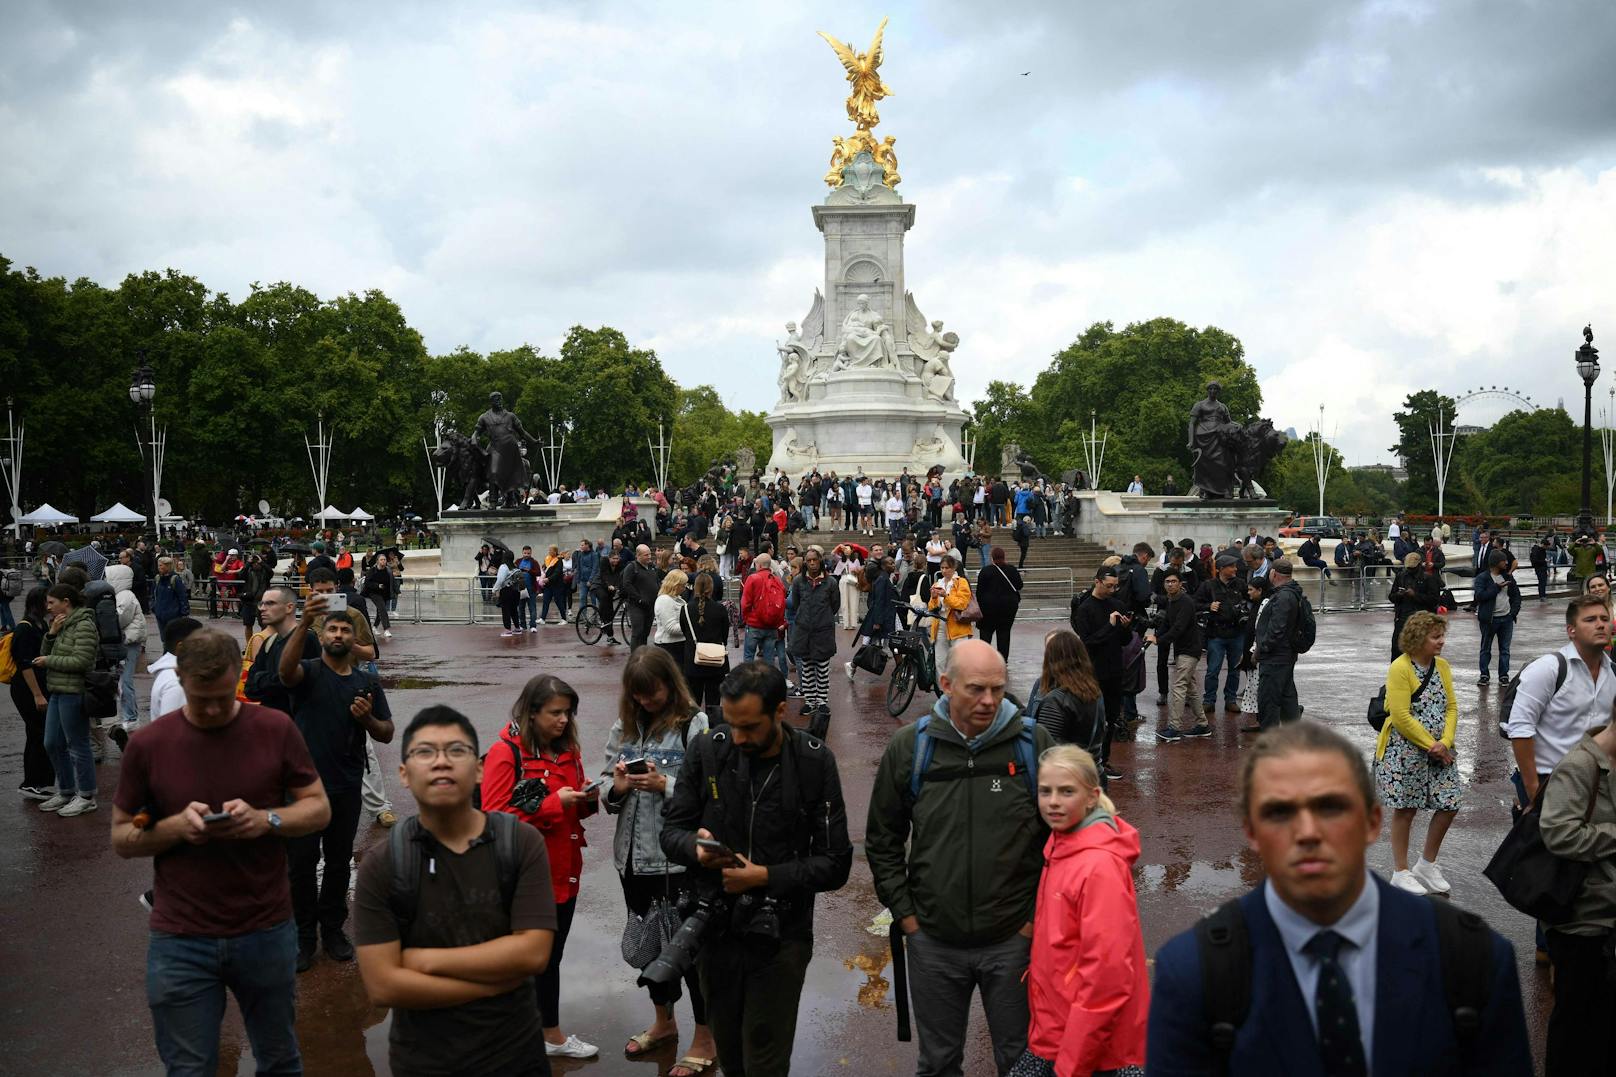 Immer mehr Menschen versammelten sich am nachmittag vor dem Buckingham Palace in London.